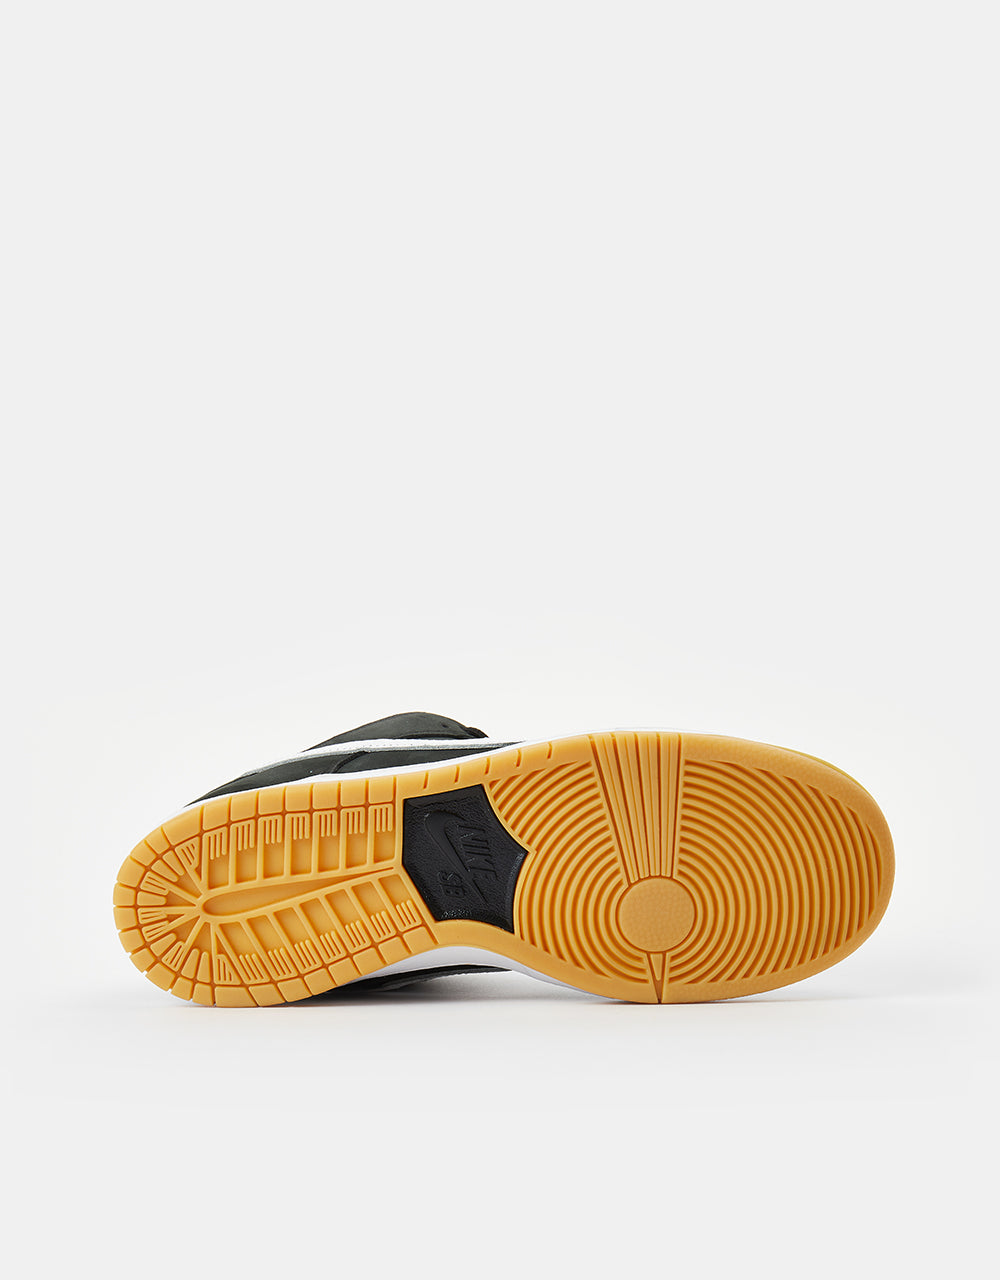 Nike SB Dunk Low Pro Premium Skate Shoes - Black/White-Black